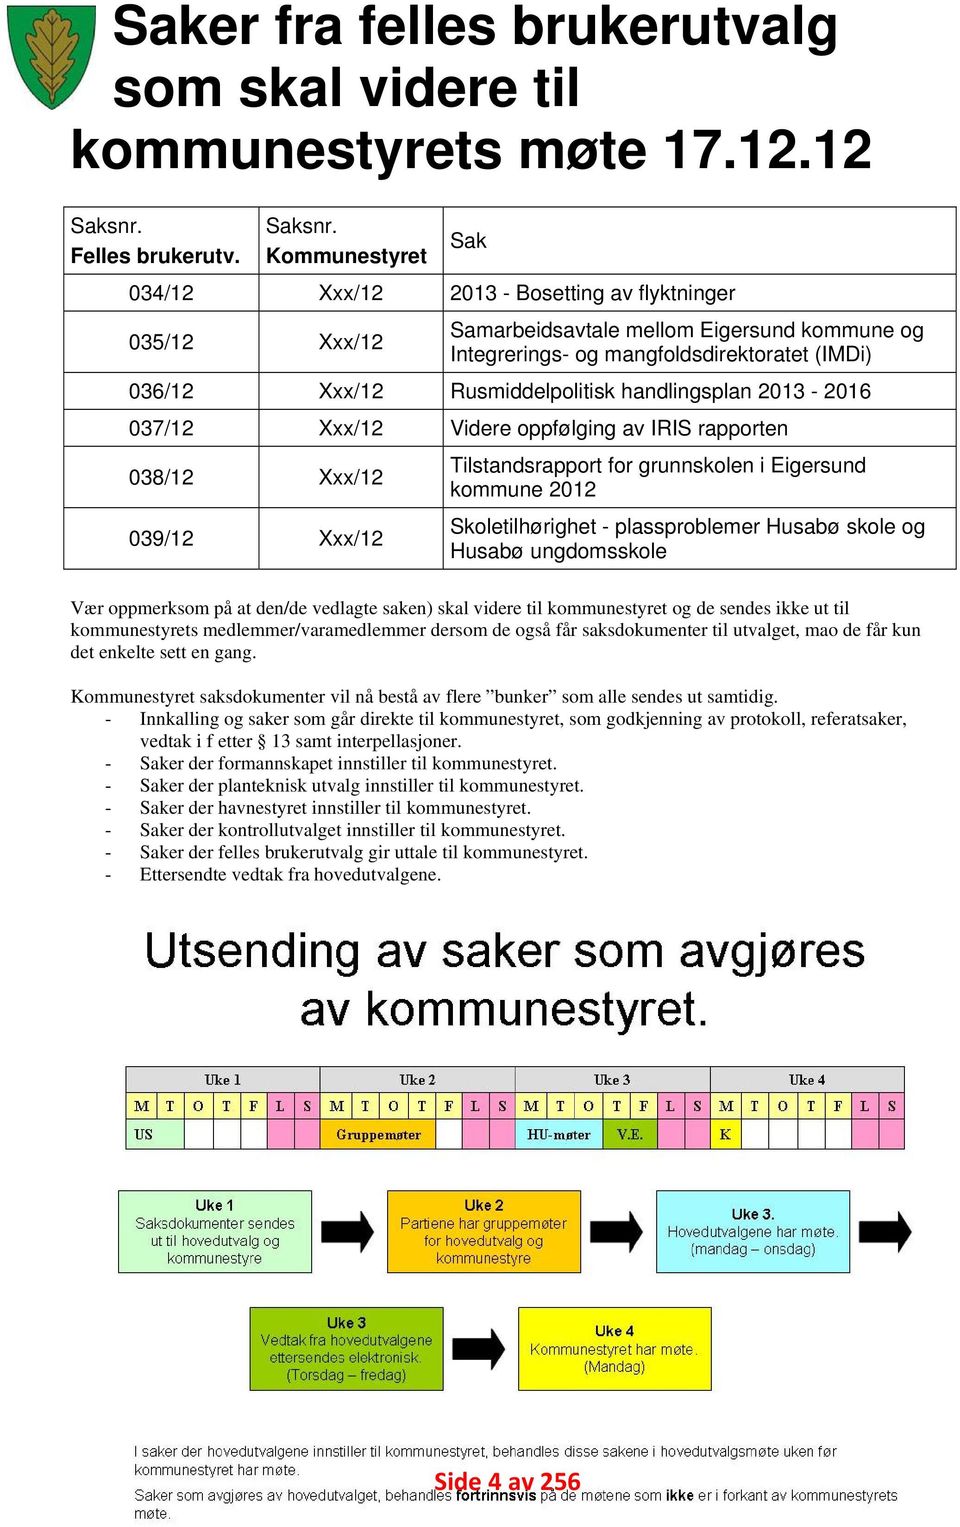 Kommunestyret 34/12 Xxx/12 213 Bosetting av flyktninger 35/12 Xxx/12 Samarbeidsavtale mellom Eigersund kommune og ntegrerings og mangfoldsdirektoratet (MDi) 36/12 Xxx/12 Rusmiddelpolitisk